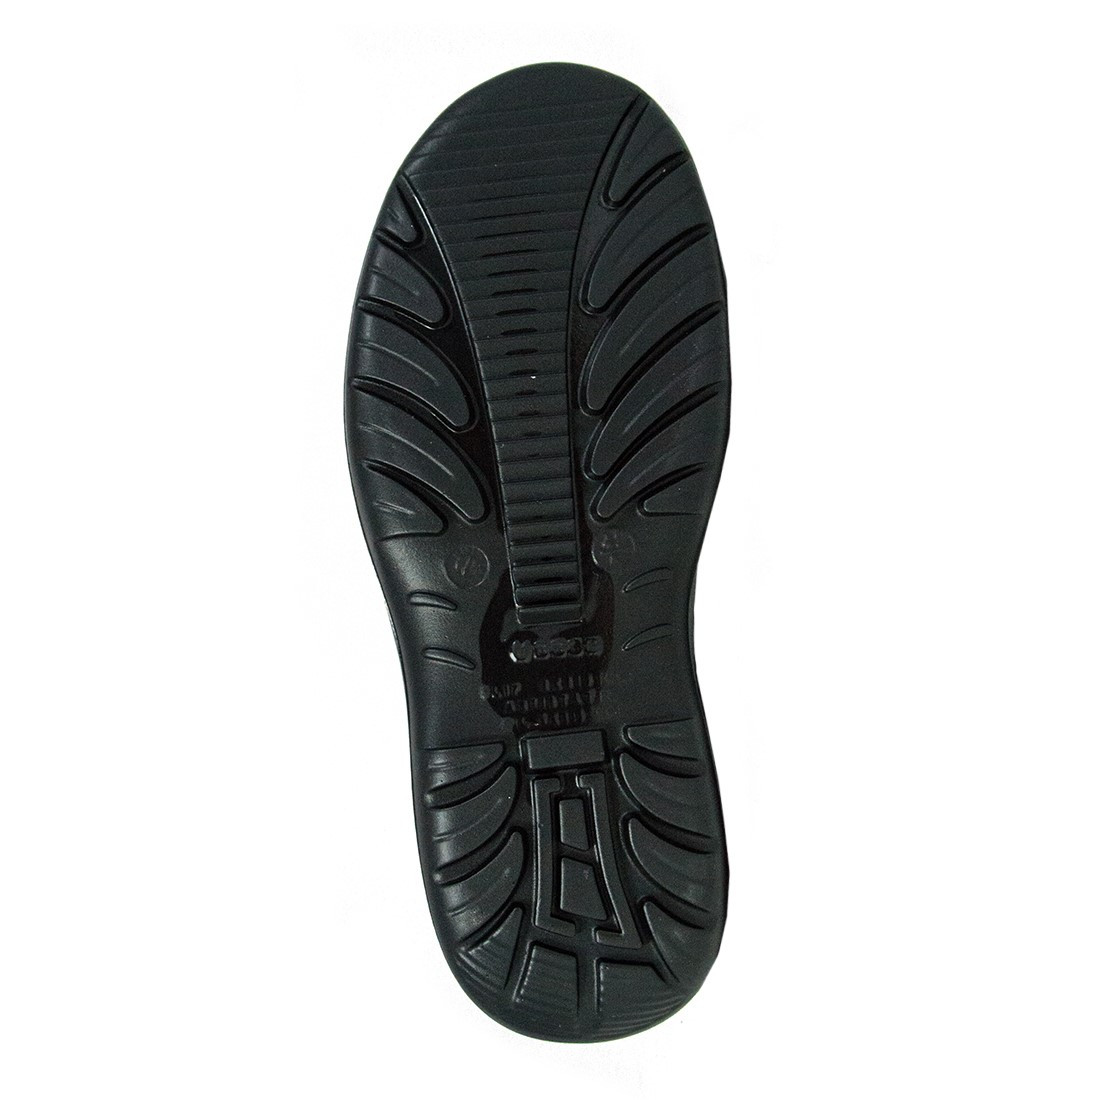 Pantofi Mechanic S1 SRC - Incaltaminte de protectie | Bocanci, Pantofi, Sandale, Cizme